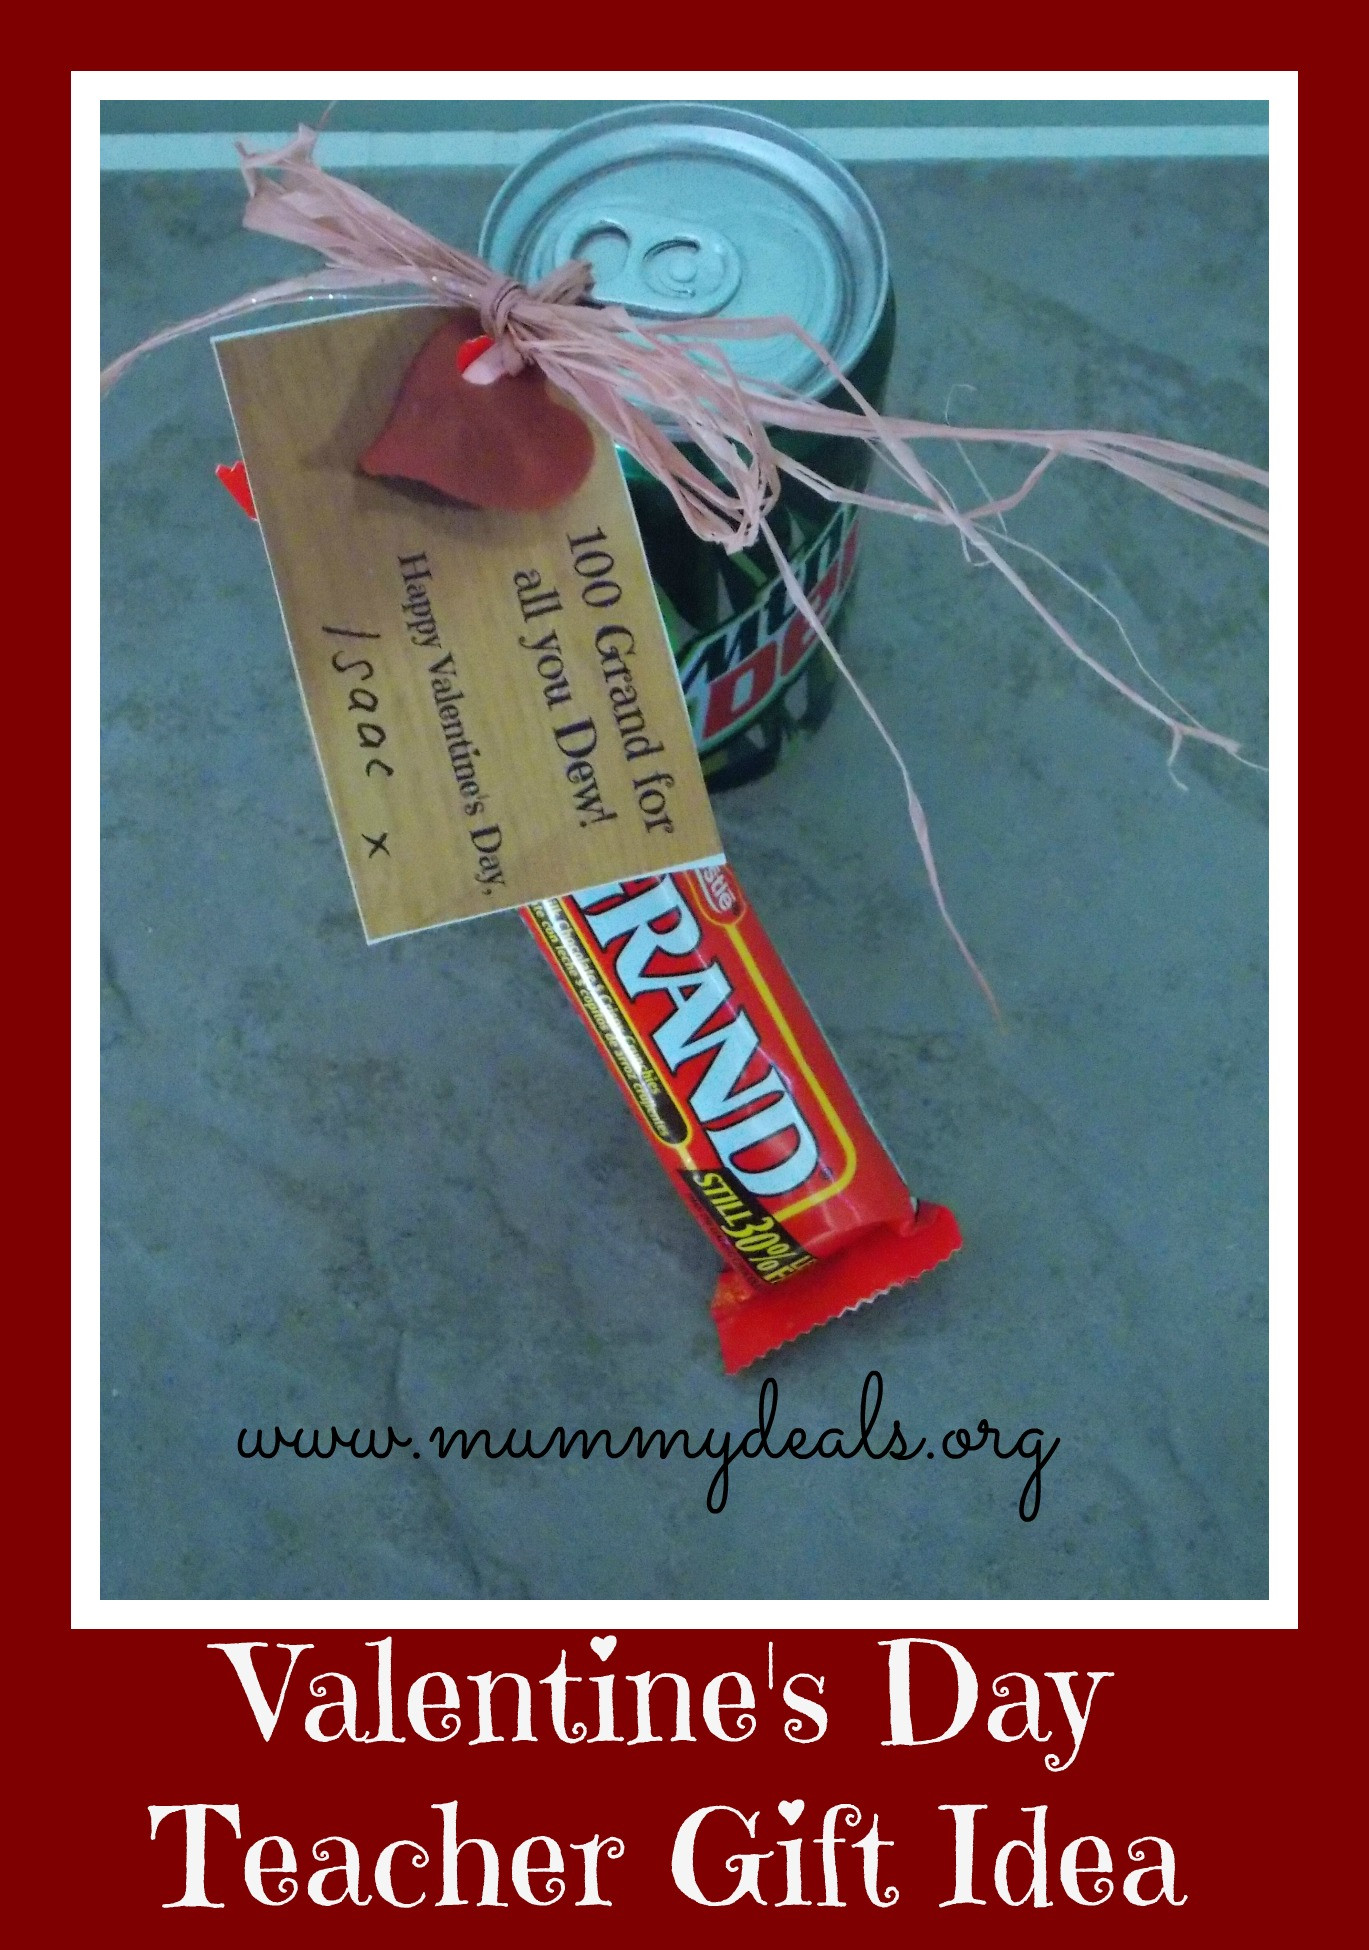 Valentines Gift Ideas For Teachers
 6 Valentine s Day Teacher Gift Ideas Mummy Deals